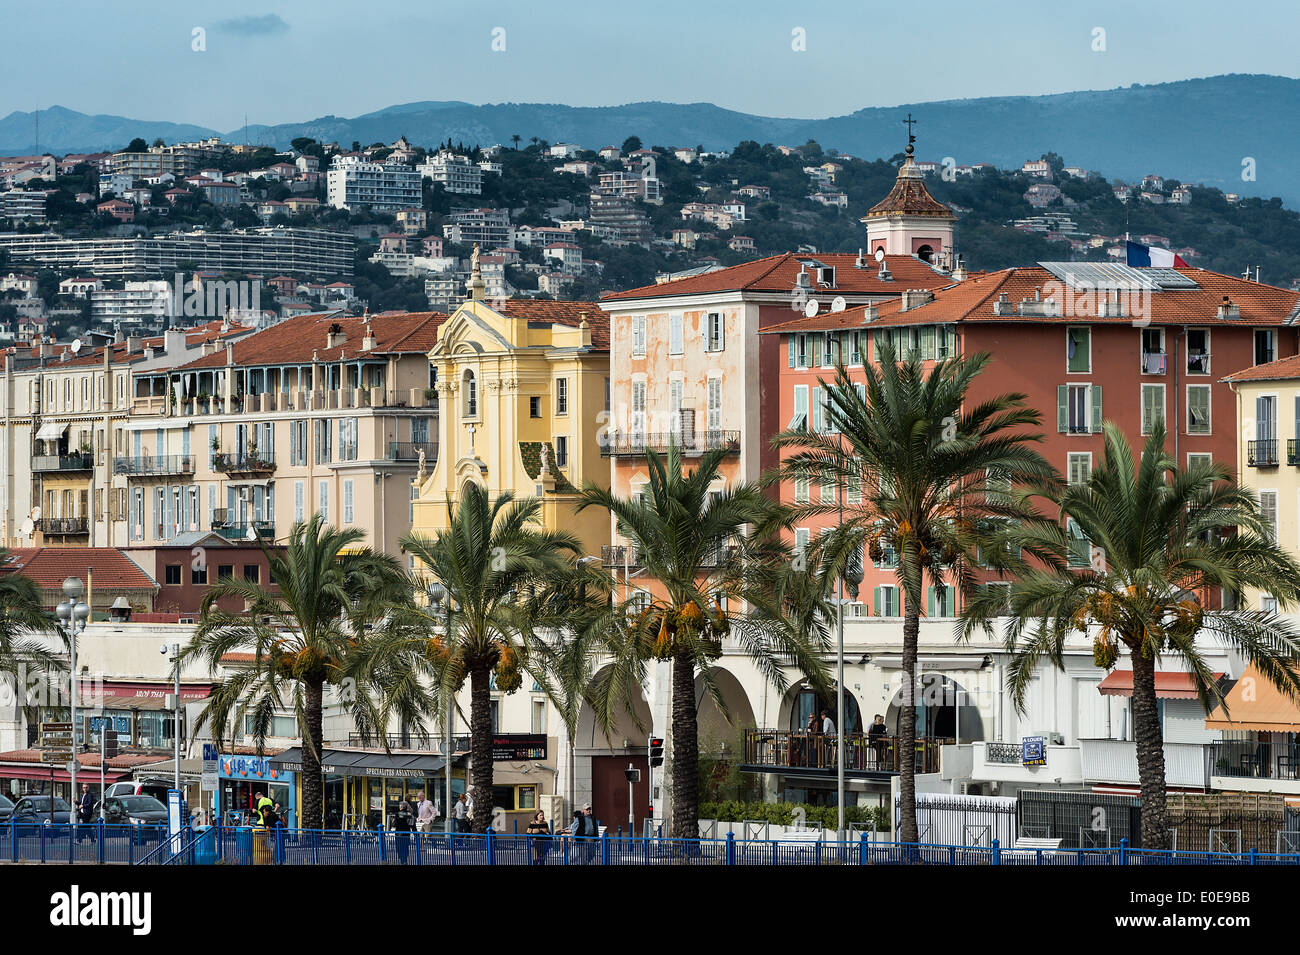 Quai de Etats-Unis, Nice, French Riviera, Côte d'Azur, France, Europe Stock Photo